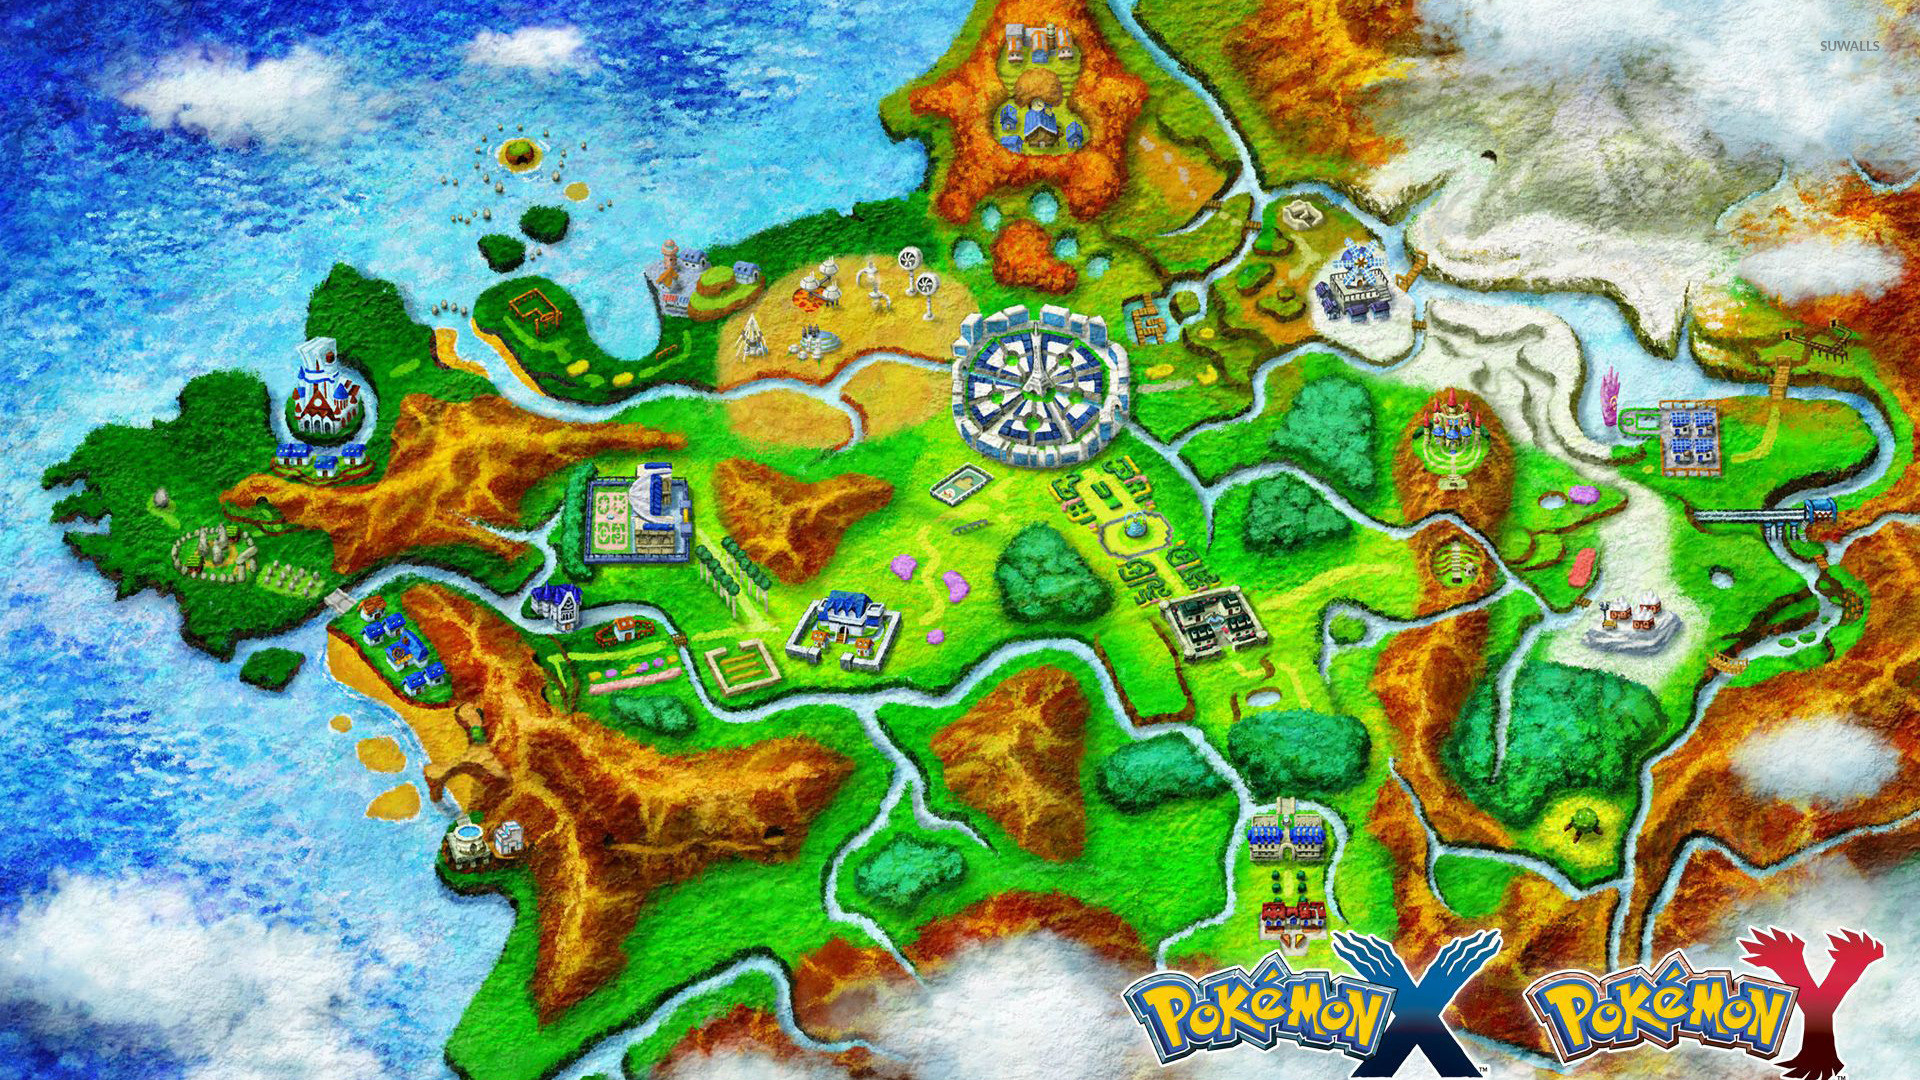 Kalos – Pokemon wallpaper jpg